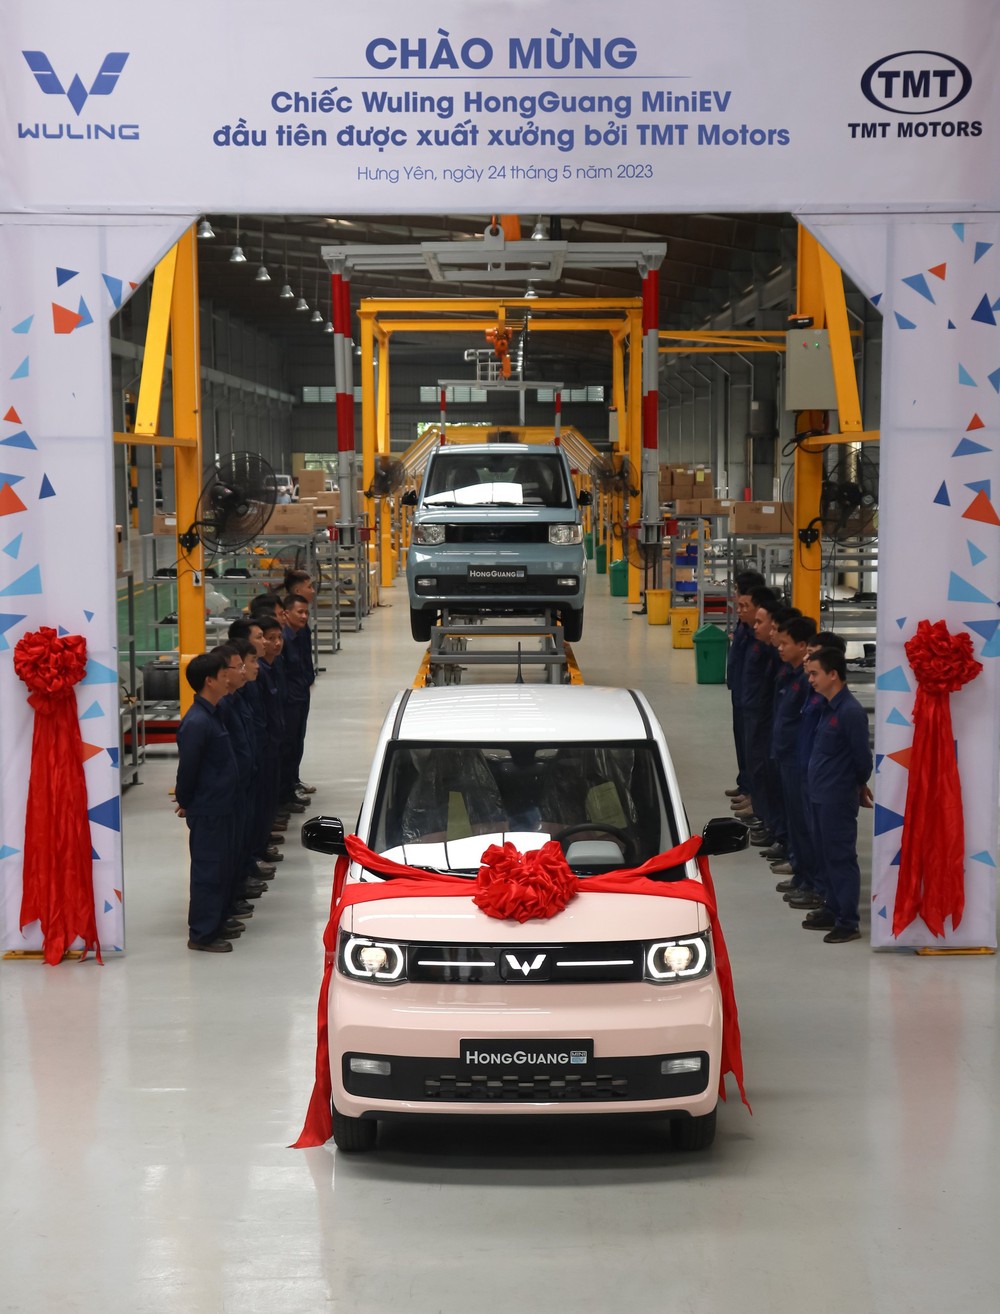 Loạt xe Trung Quốc sắp đổ bộ vào Việt Nam, có mẫu rẻ nhất thị trường ô tô - Ảnh 6.